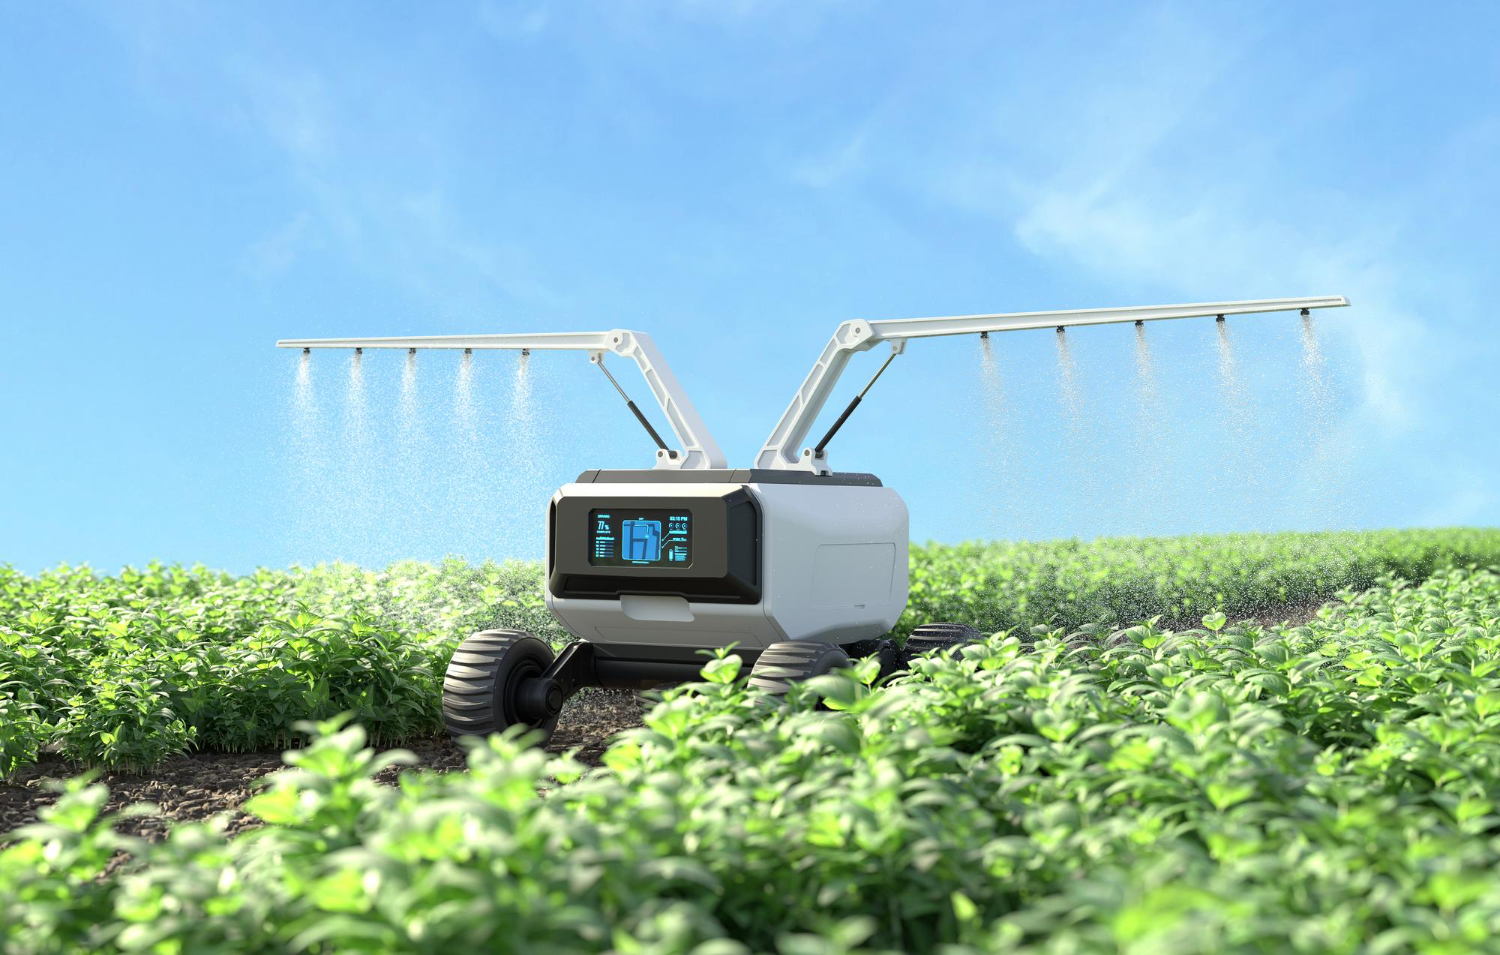 การใช้เทคโนโลยีเพื่อการจัดการน้ำและการรักษาสิ่งแวดล้อมในภาคเกษตร